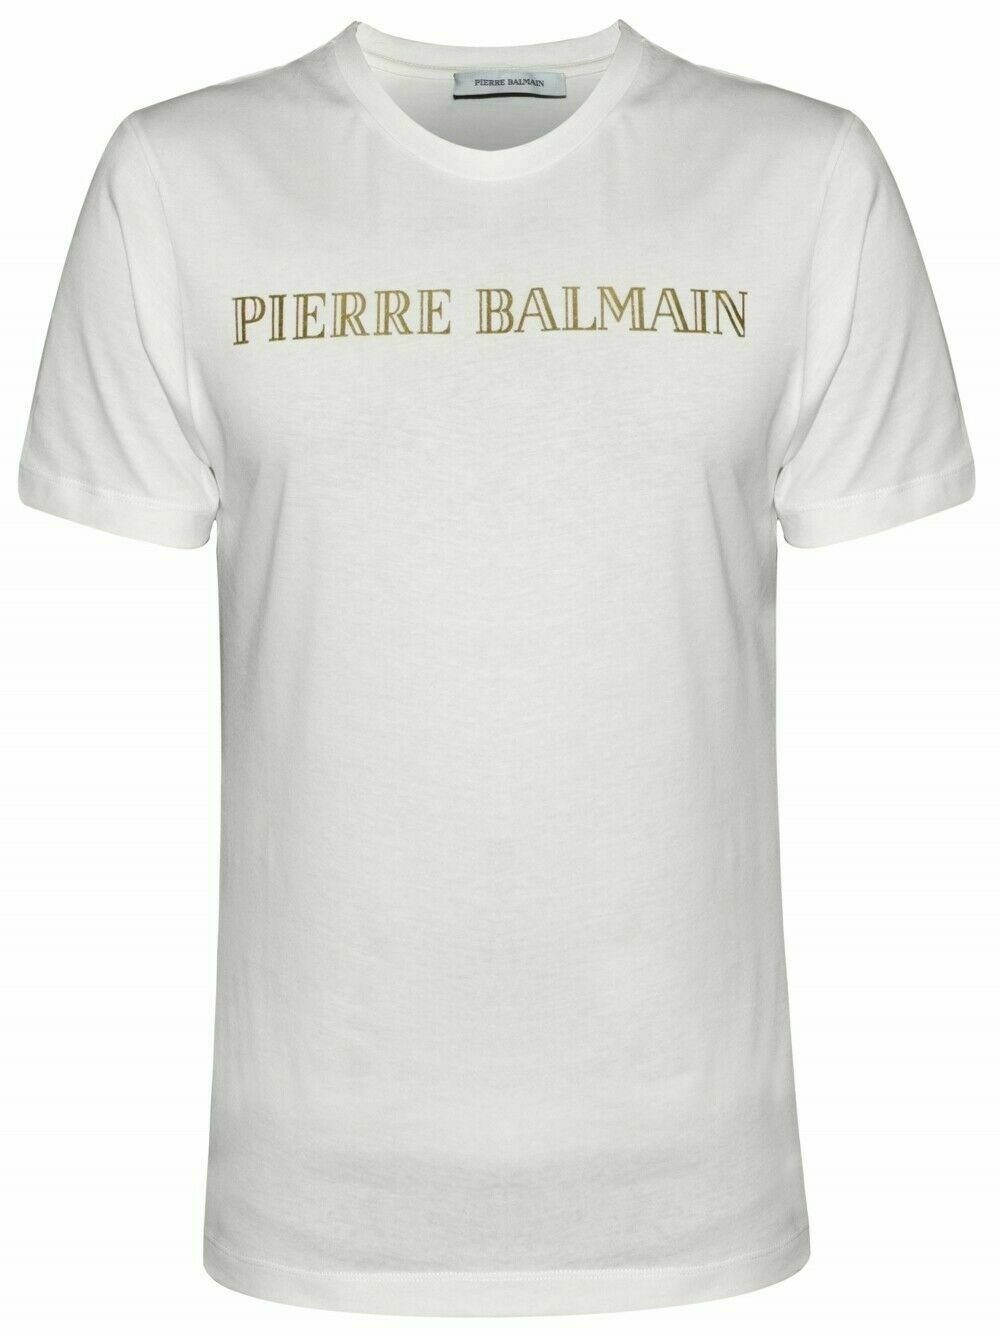 Balmain T-Shirt PIERRE BALMAIN MENS ICONIC CULT OFF-WHITE LOGOSHIRT LOGO SHIRT T-SHIRT